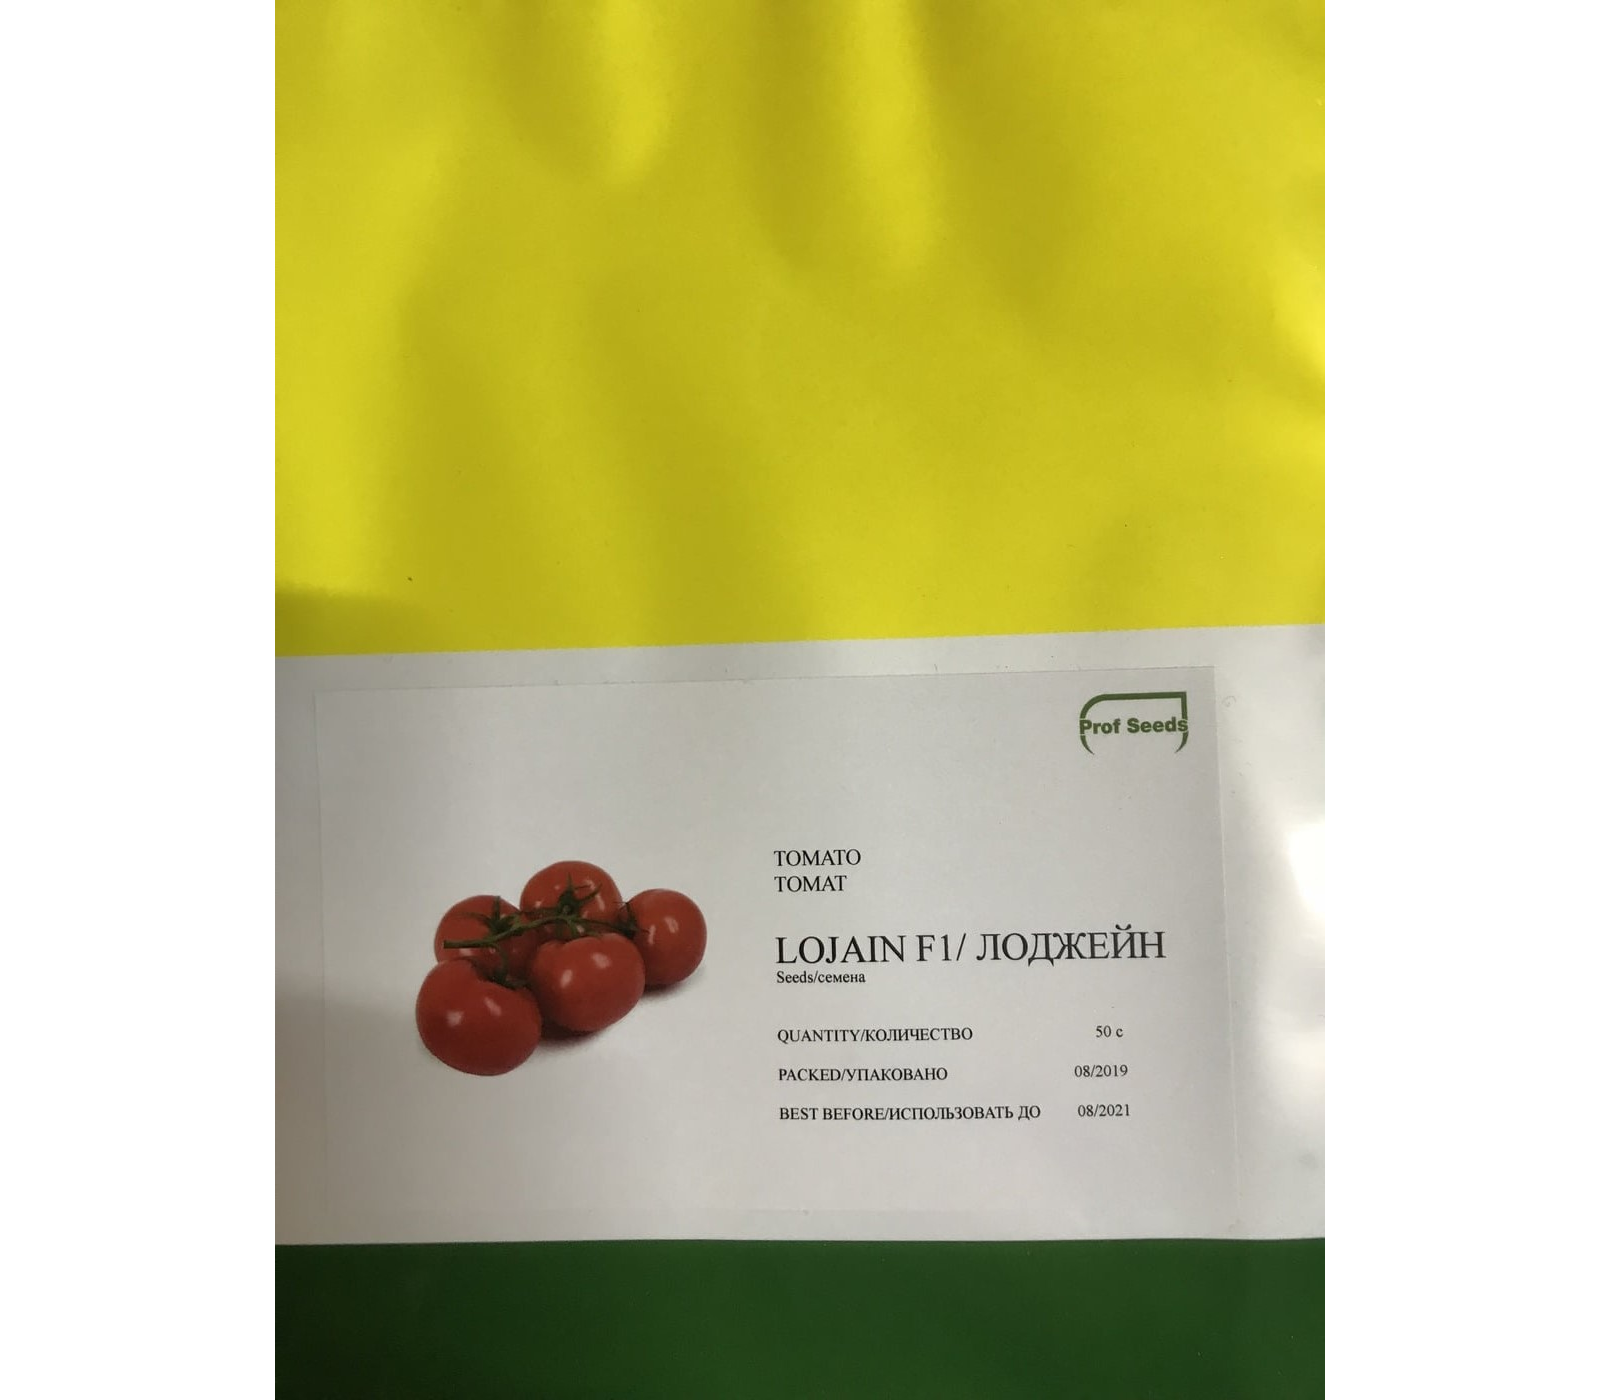 Лоджейн F1 - семена томатов, 1 000 семян, Enza Zaden/Энза Заден (Голландия)- купить в интернет-магазине fremercentr.ru быстрая доставка. Почтой или ТК.